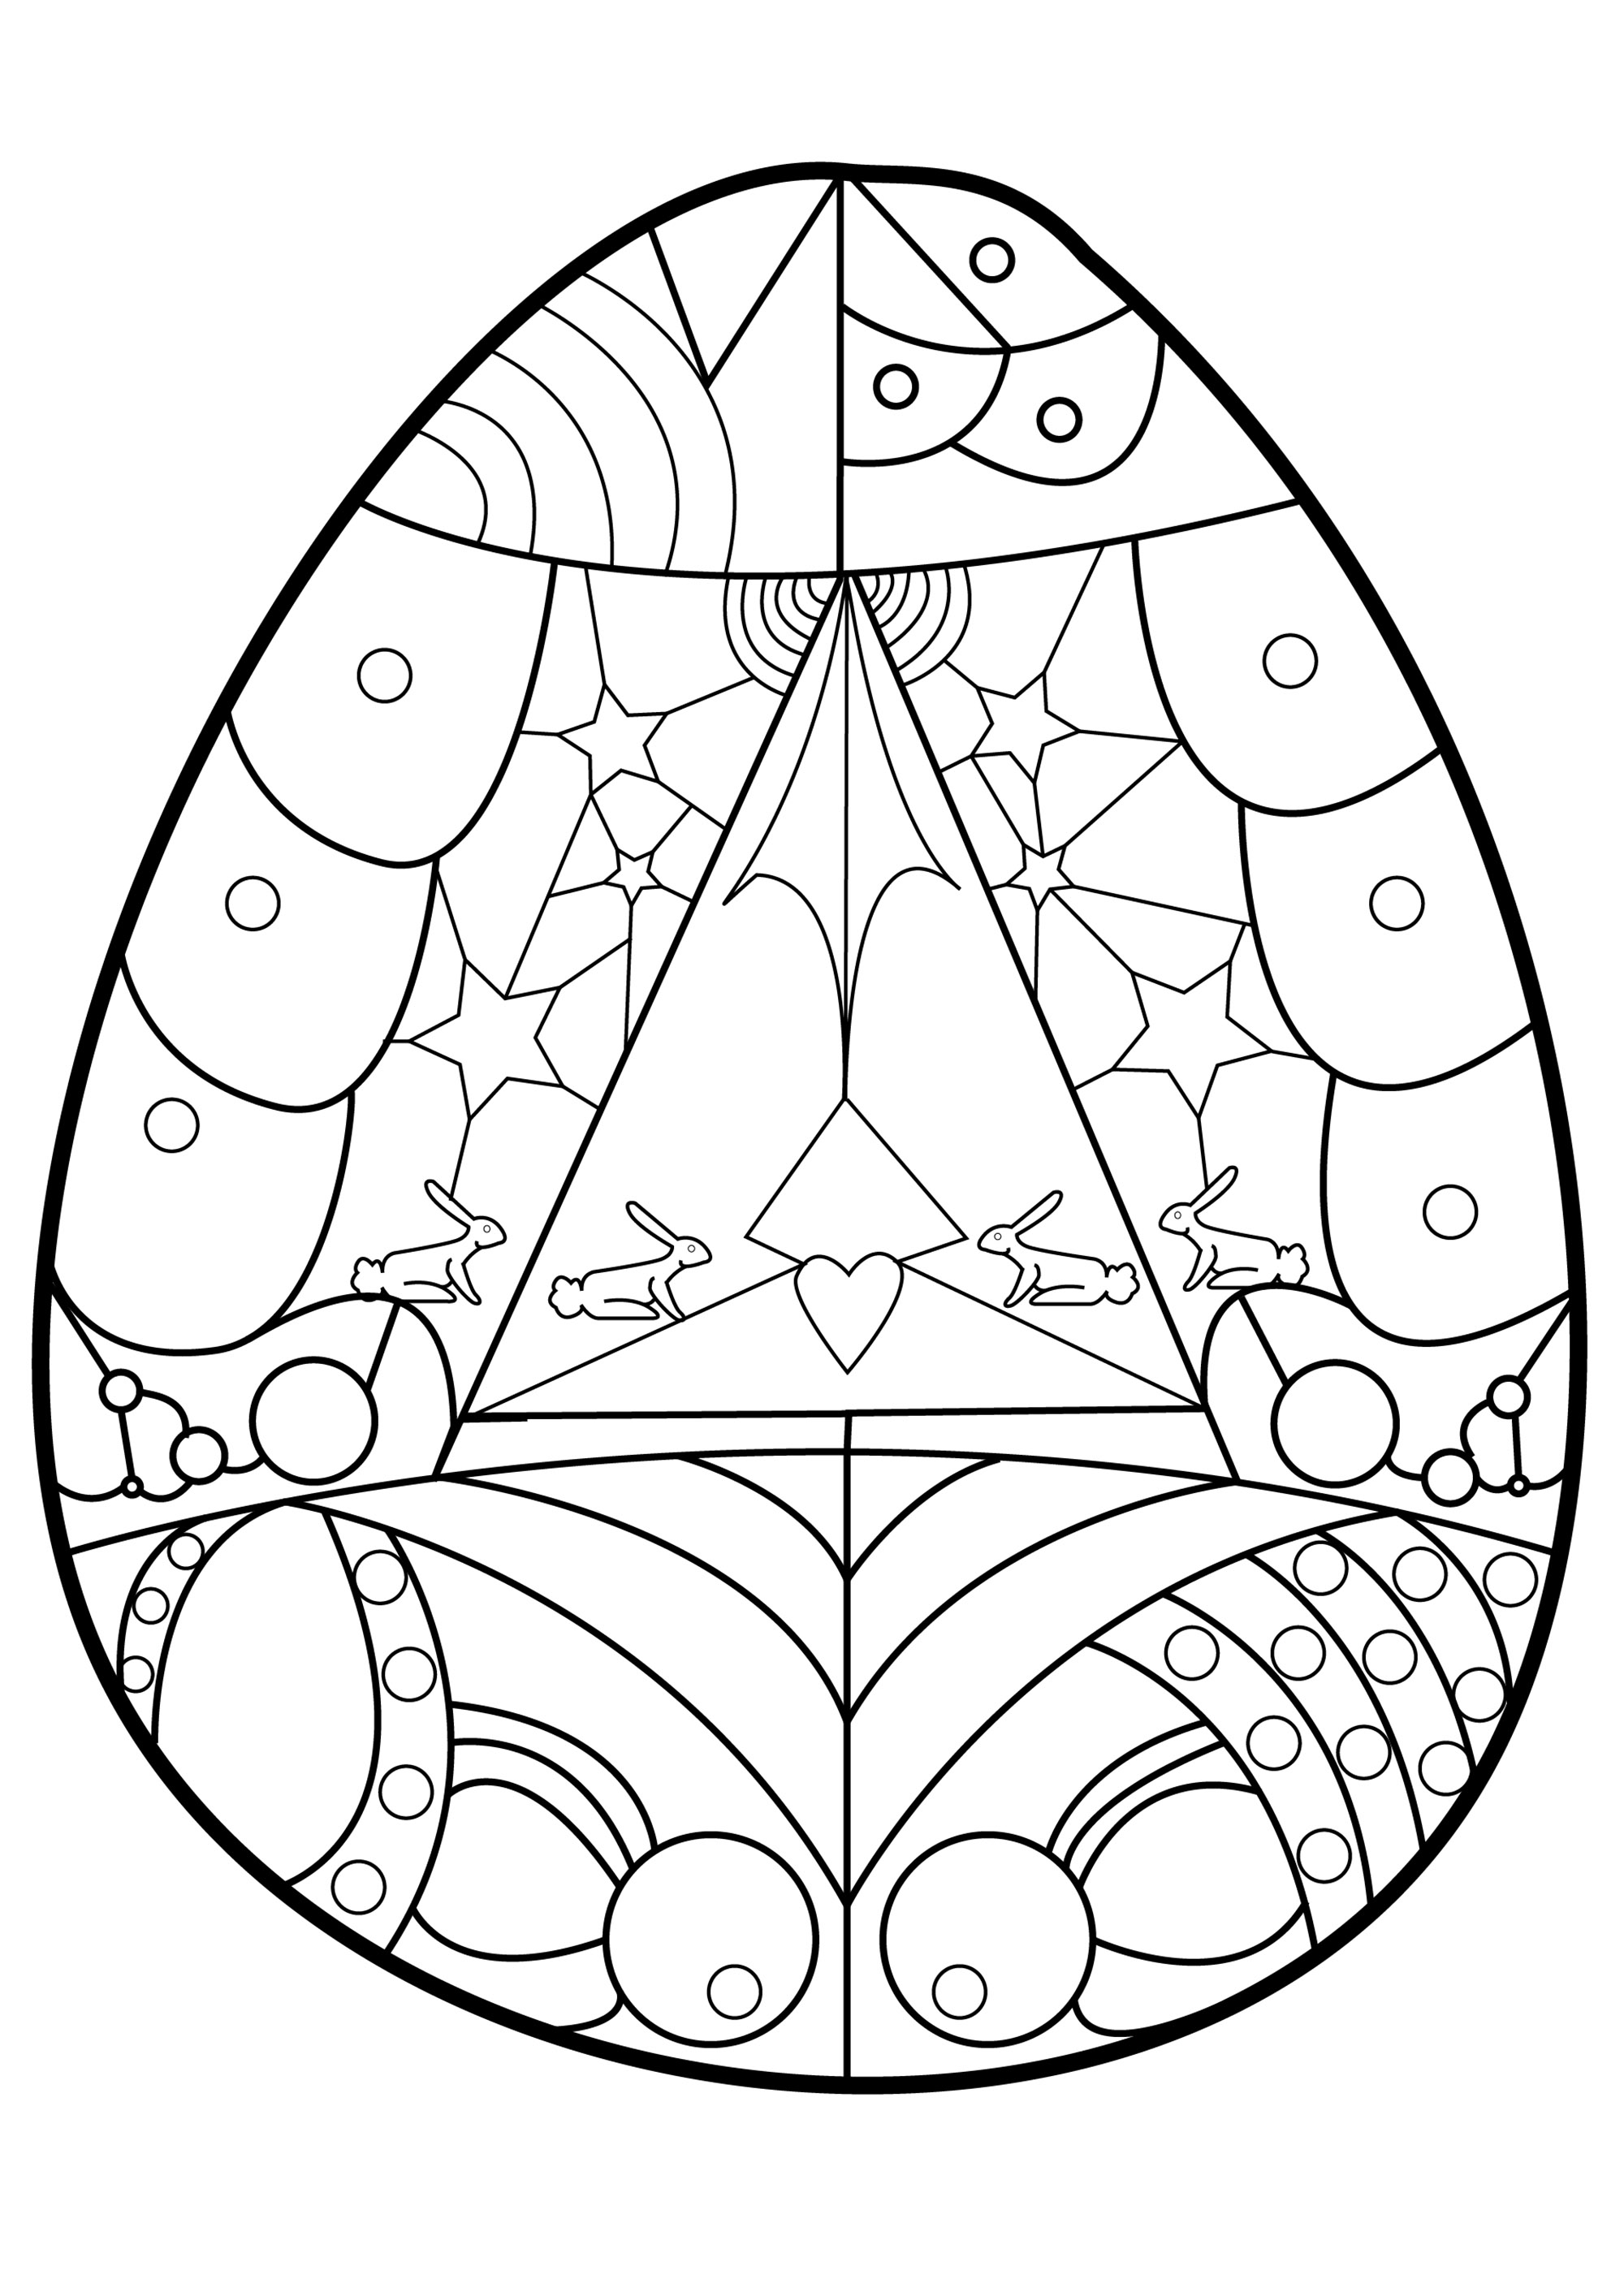 Diverses formes géométriques et motifs à colorier dans ce joli oeuf de Pâques